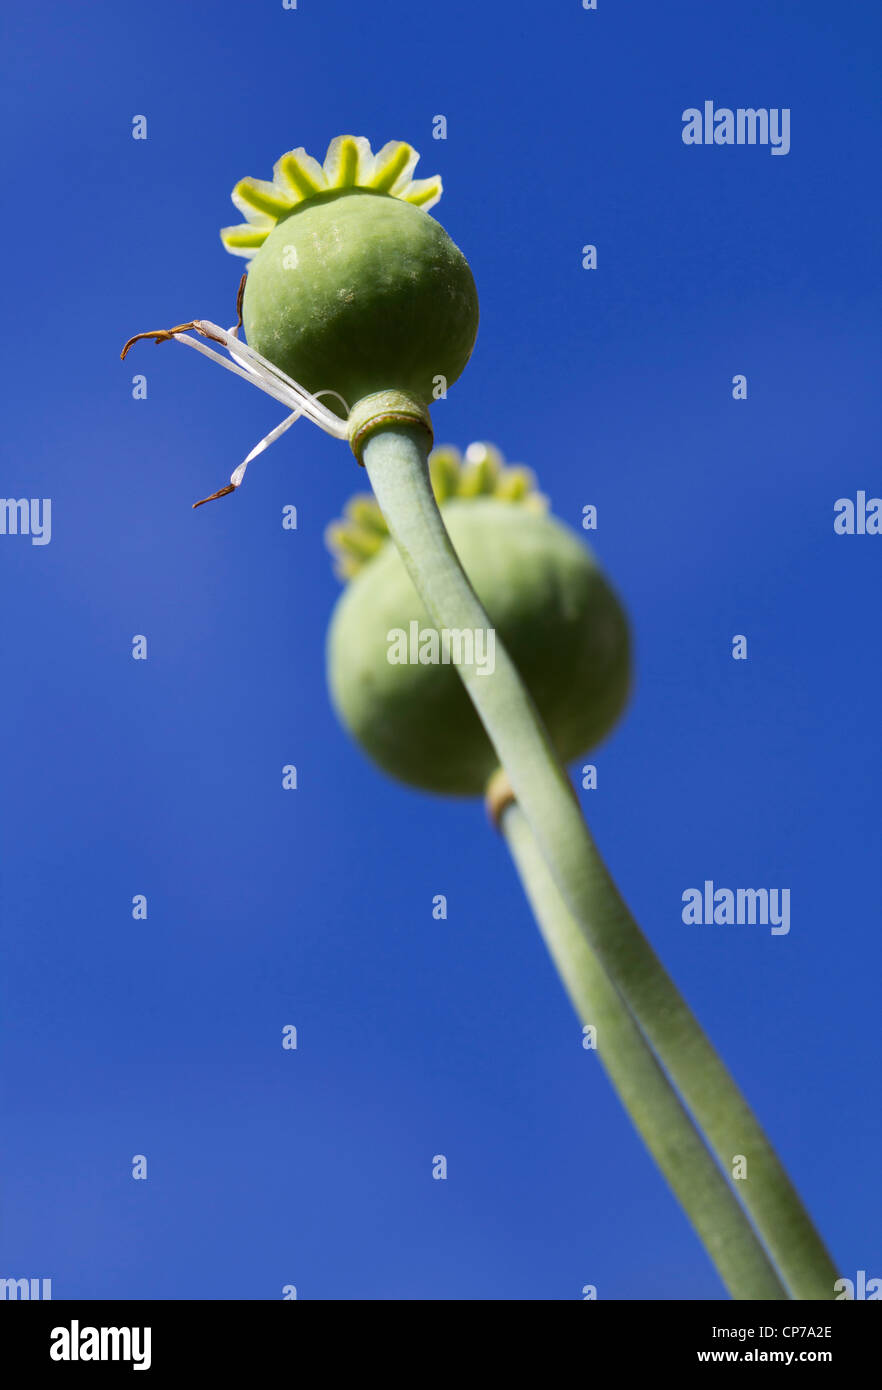 Papaver somniferum, Poppy, Opium poppy, Green, Blue. Stock Photo